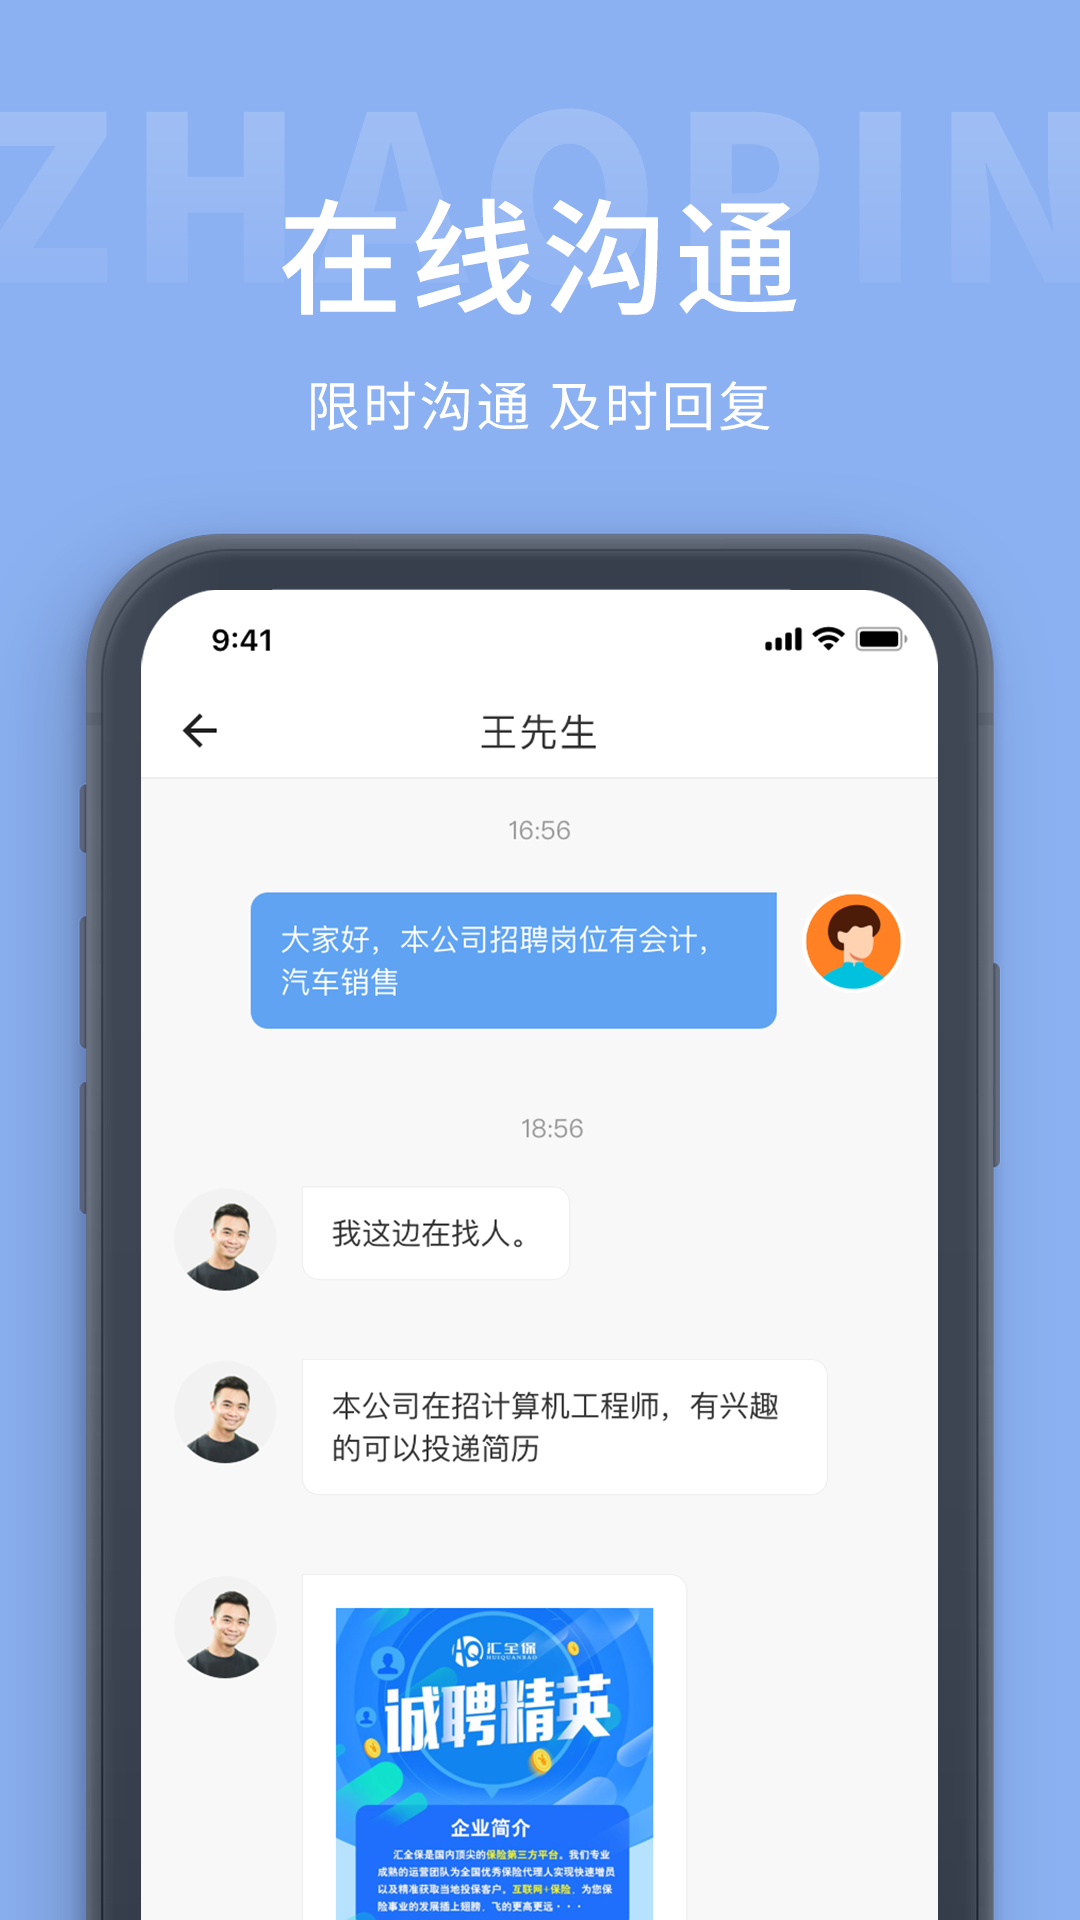 安卓葫芦岛招聘网app